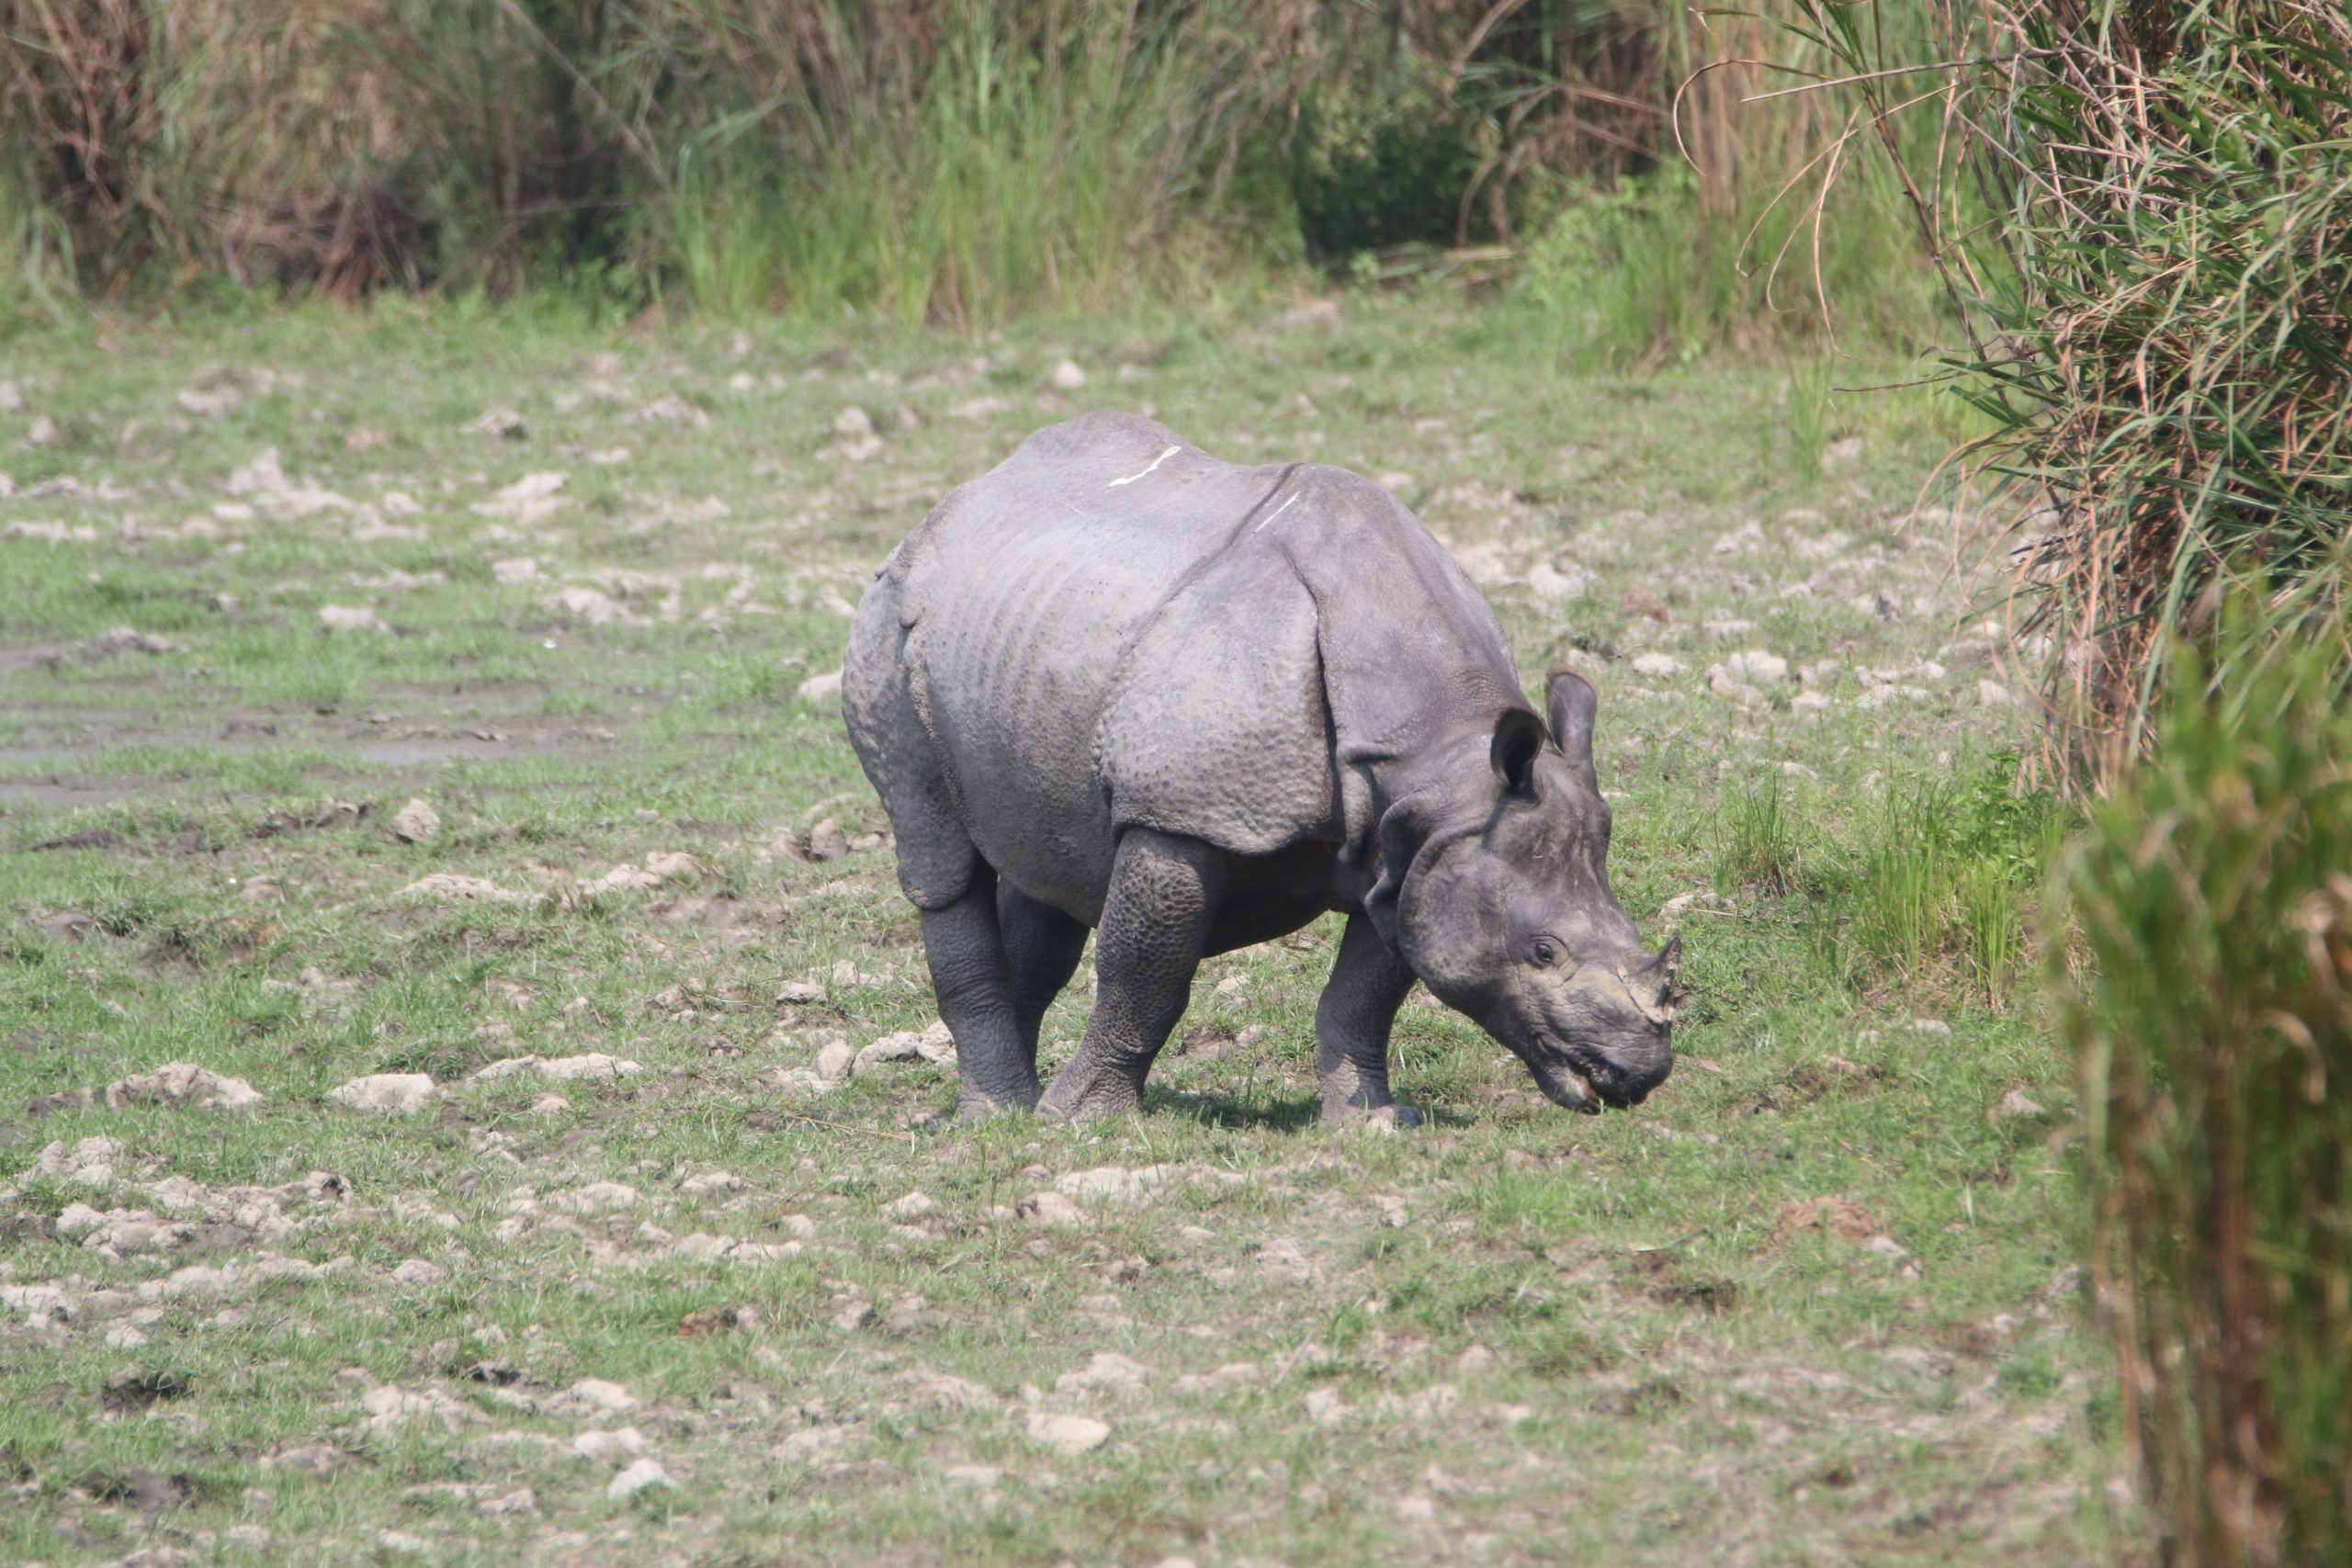 A rhino in a jungle